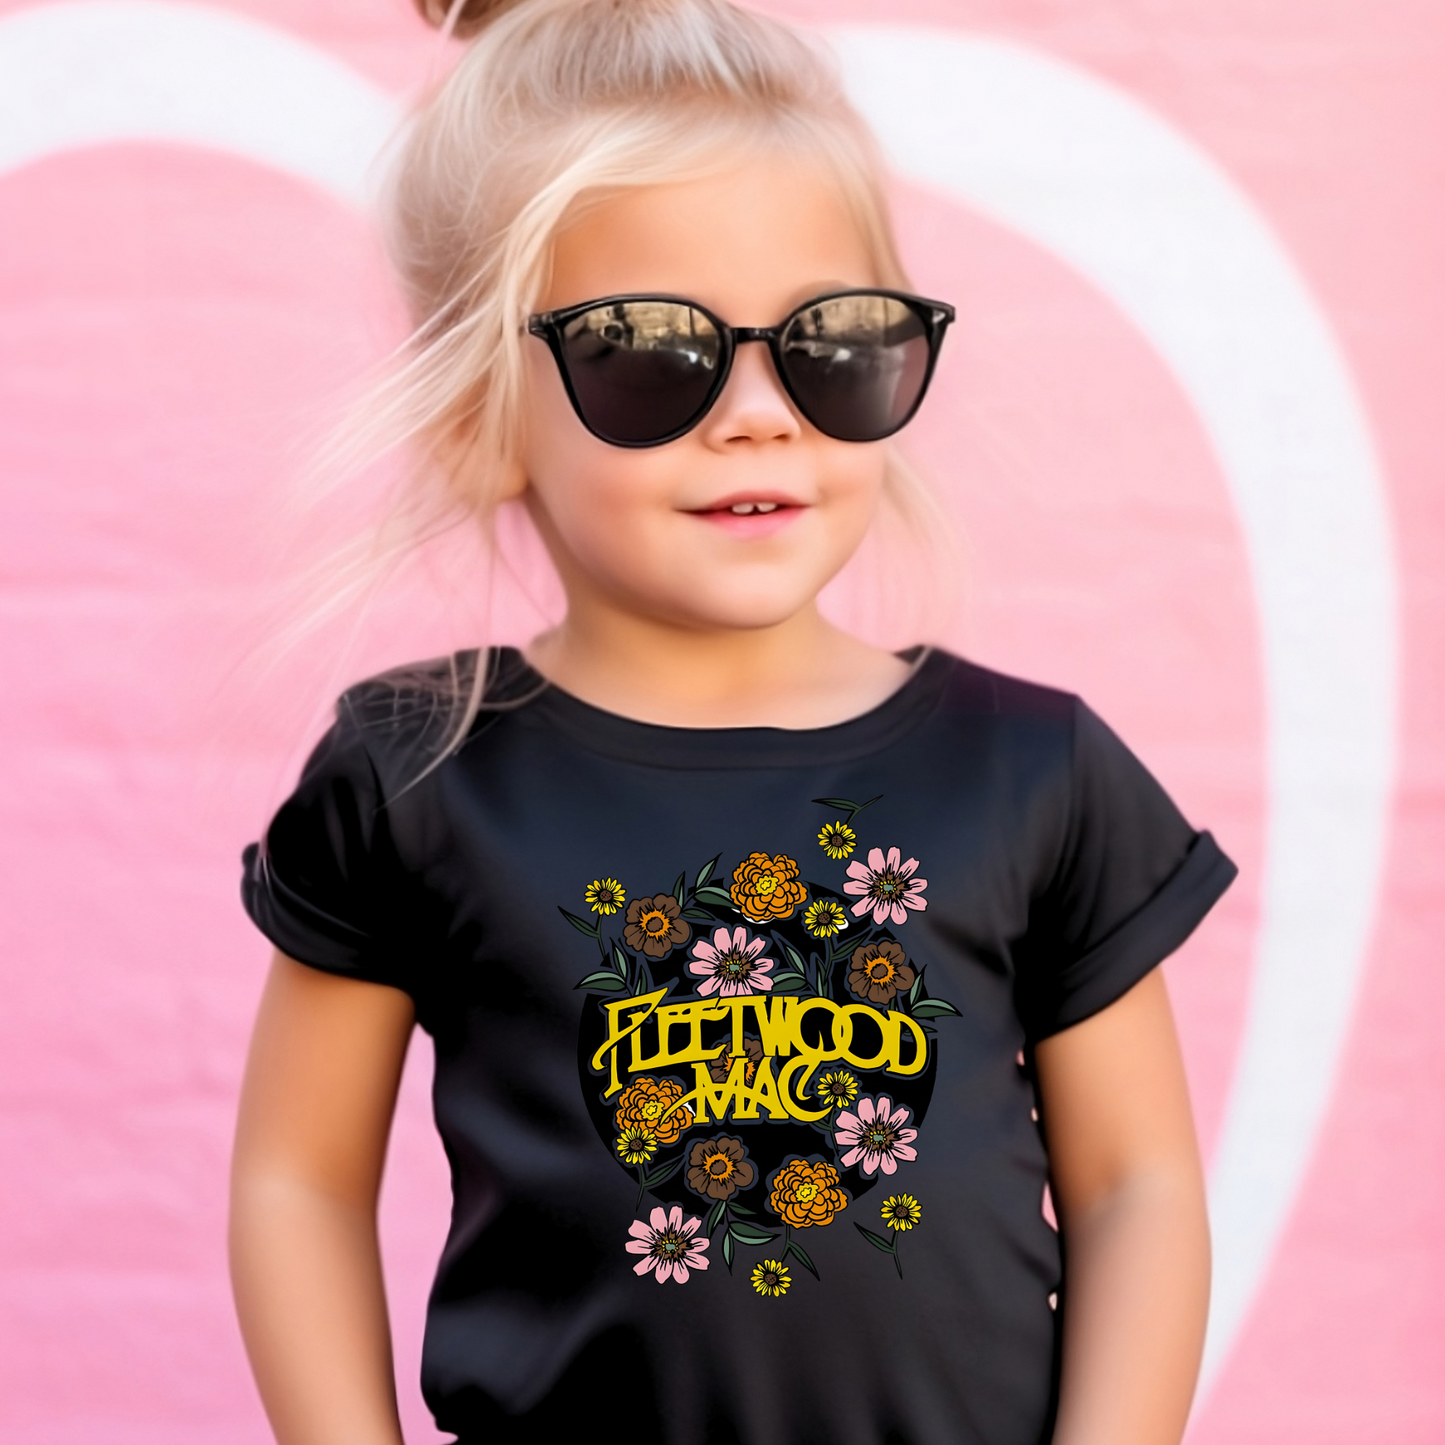 Fleetwood t-shirt | Kids t-shirt | Concert t-shirt | Rumours tour